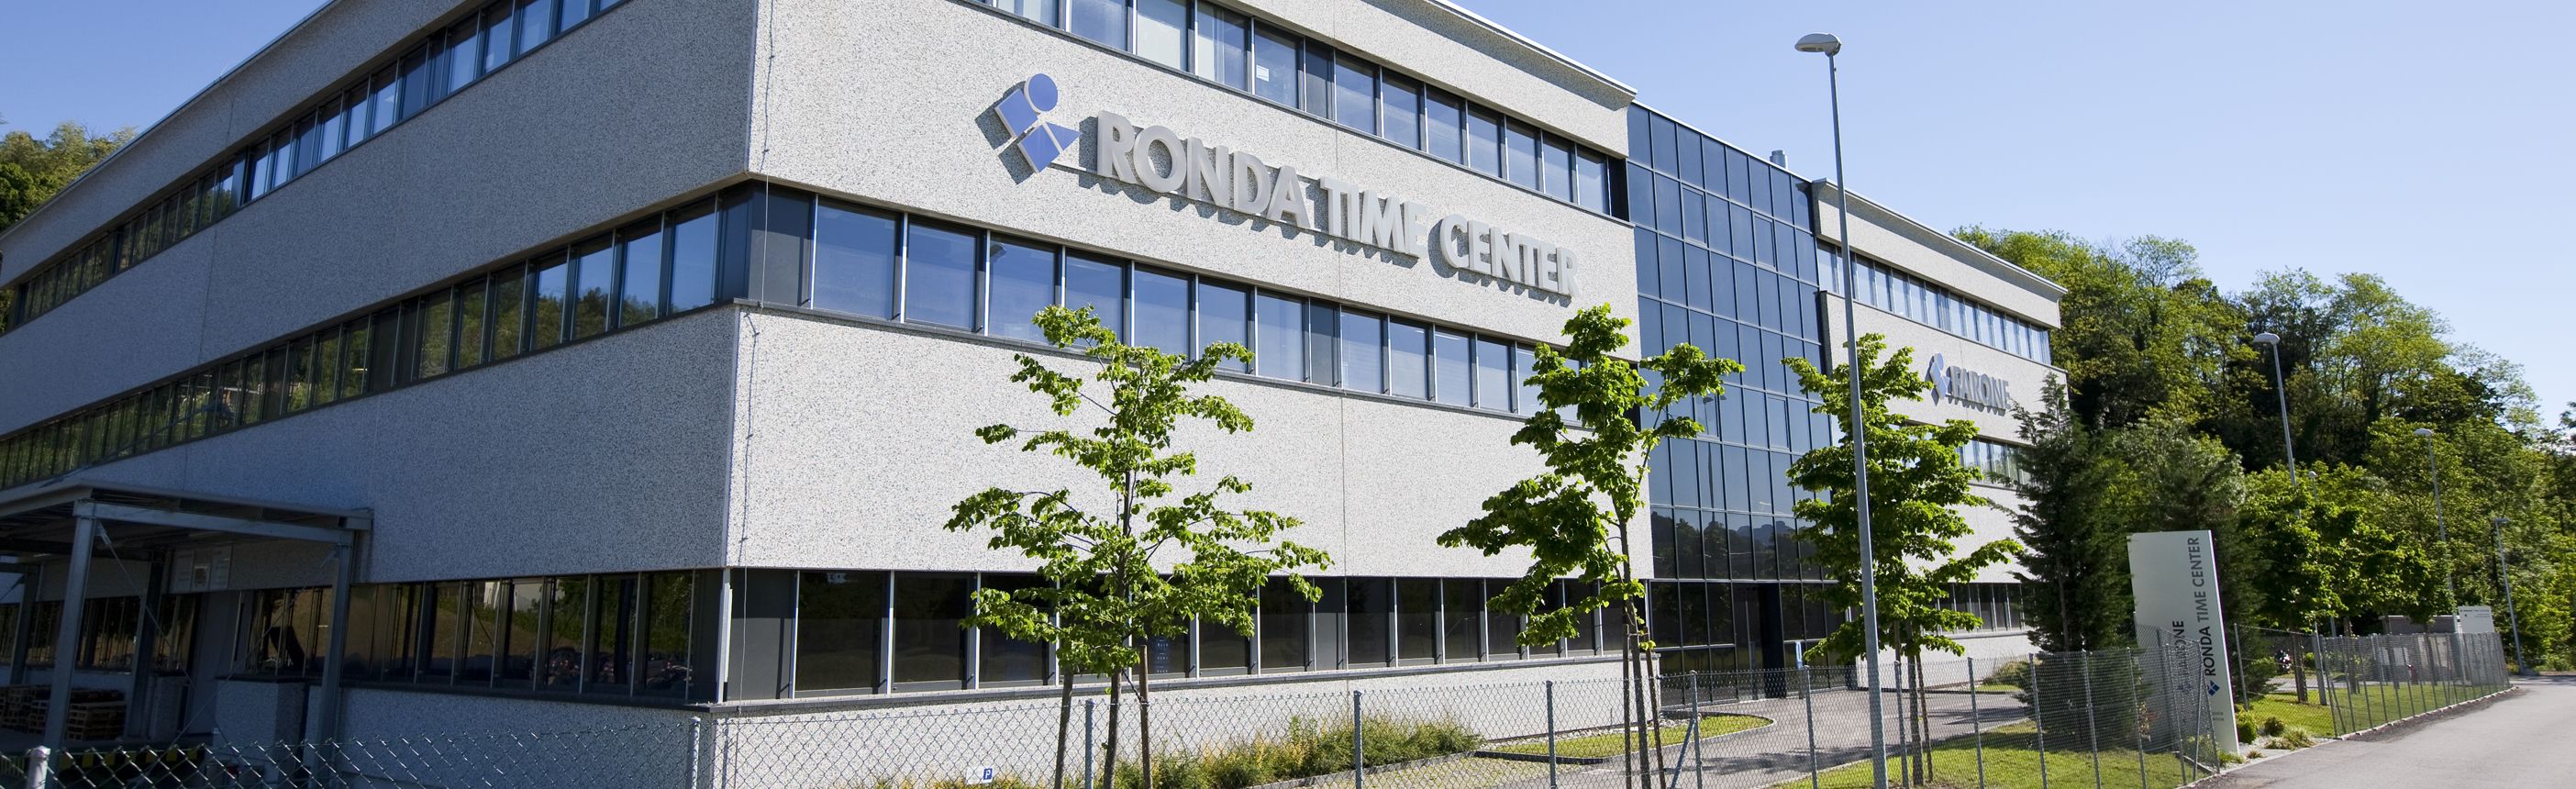 Firmensitz von Ronda Time Center in Stabio / Schweiz